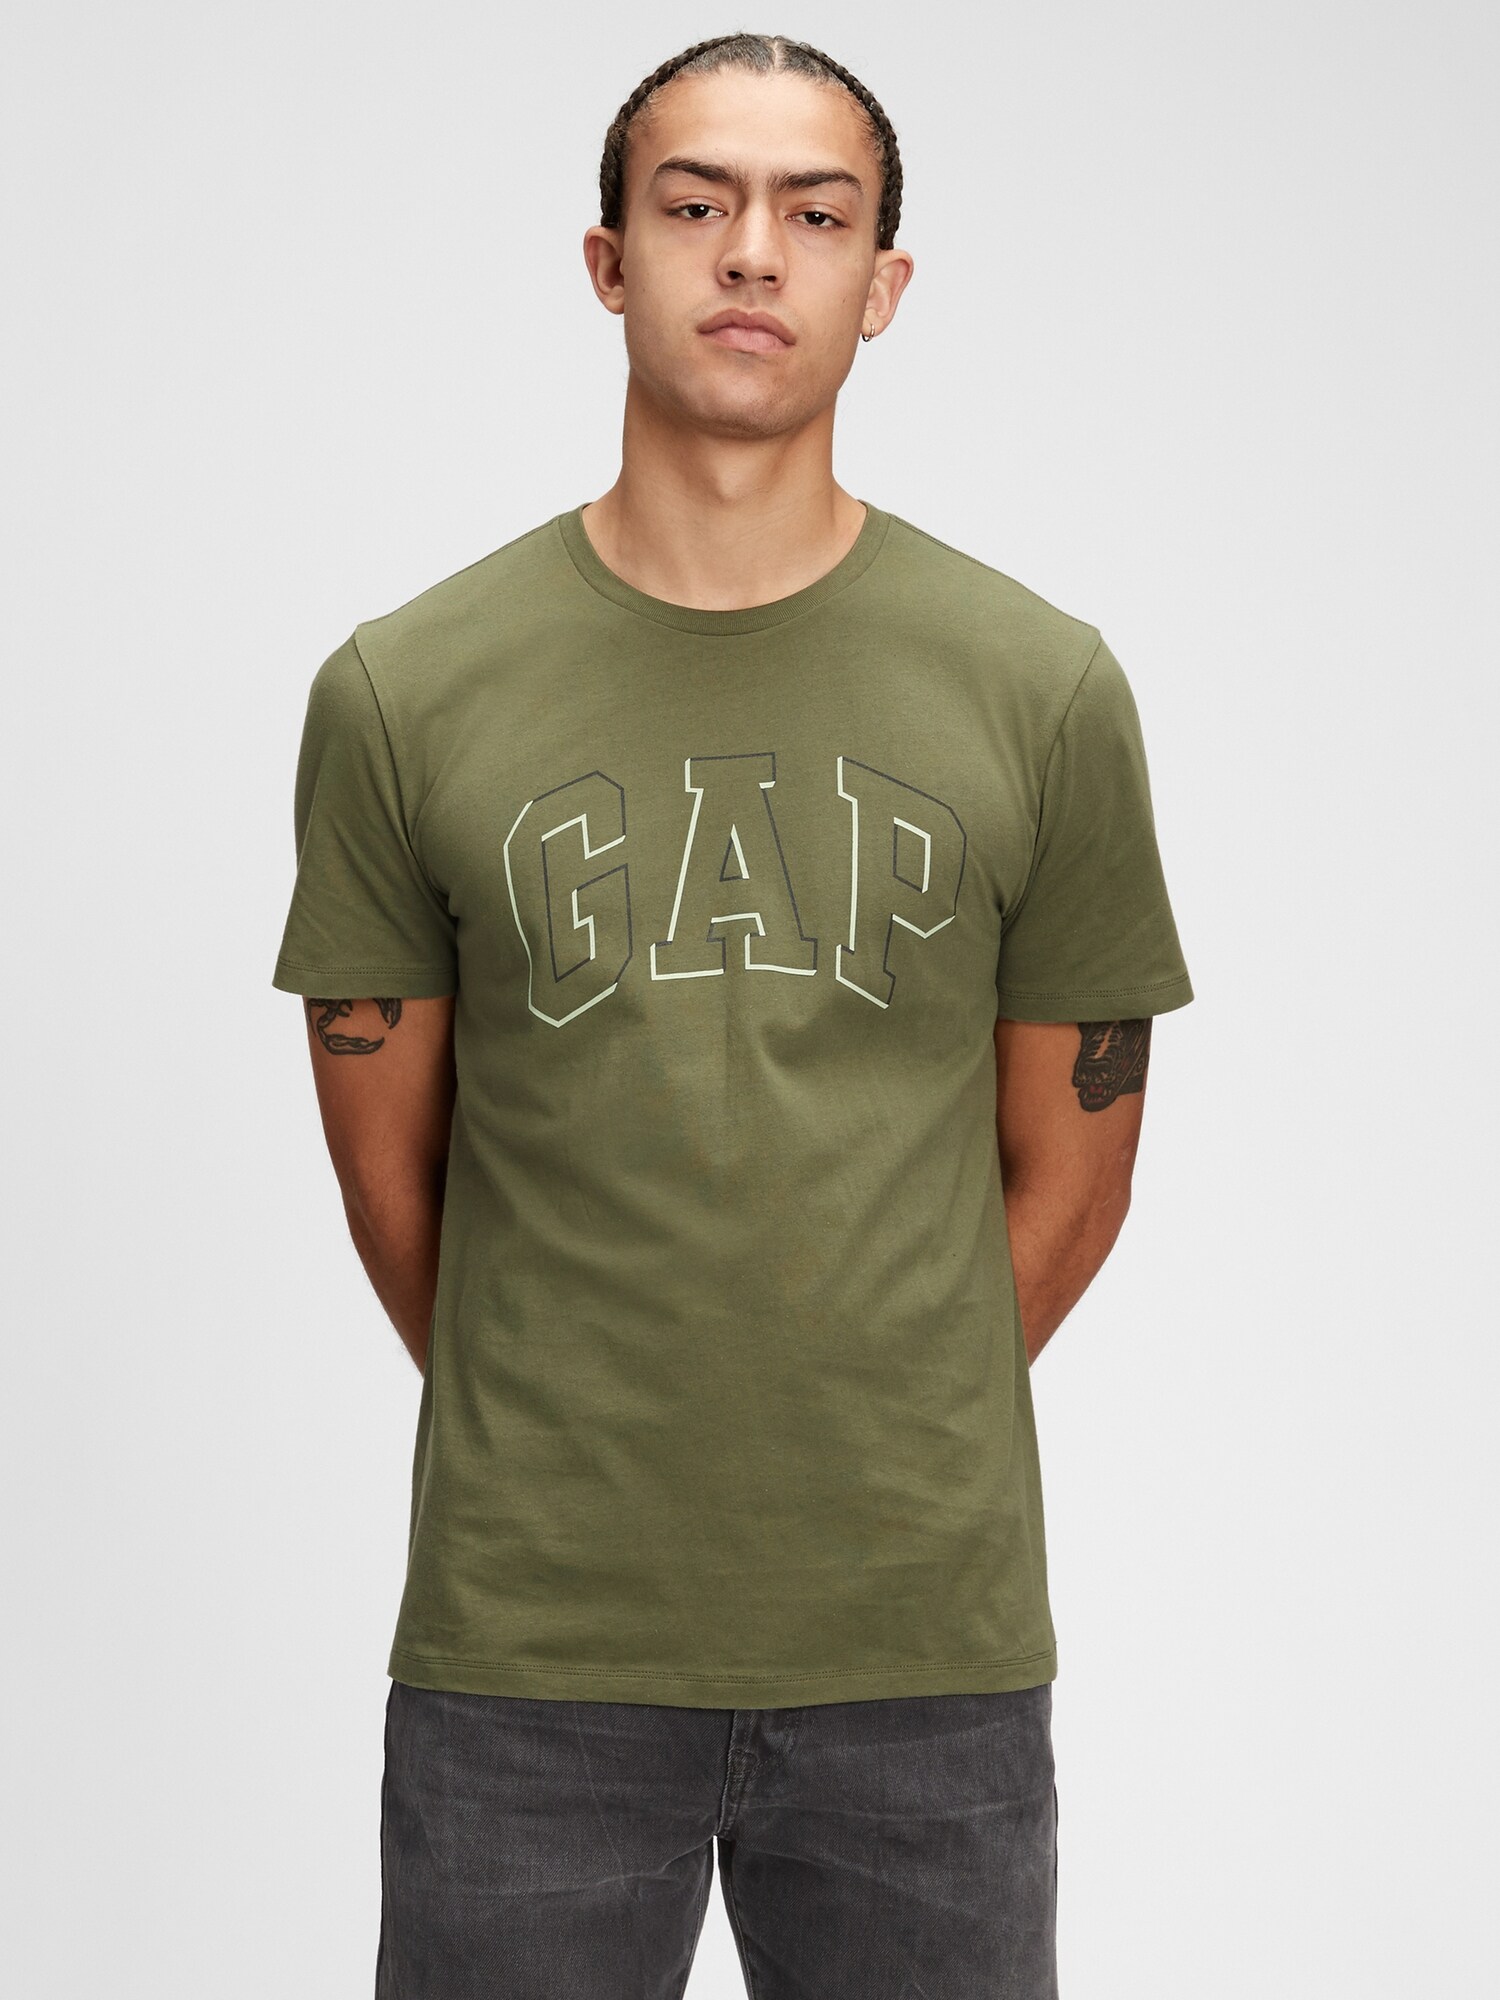 Gap Logo T-Shirt. 1